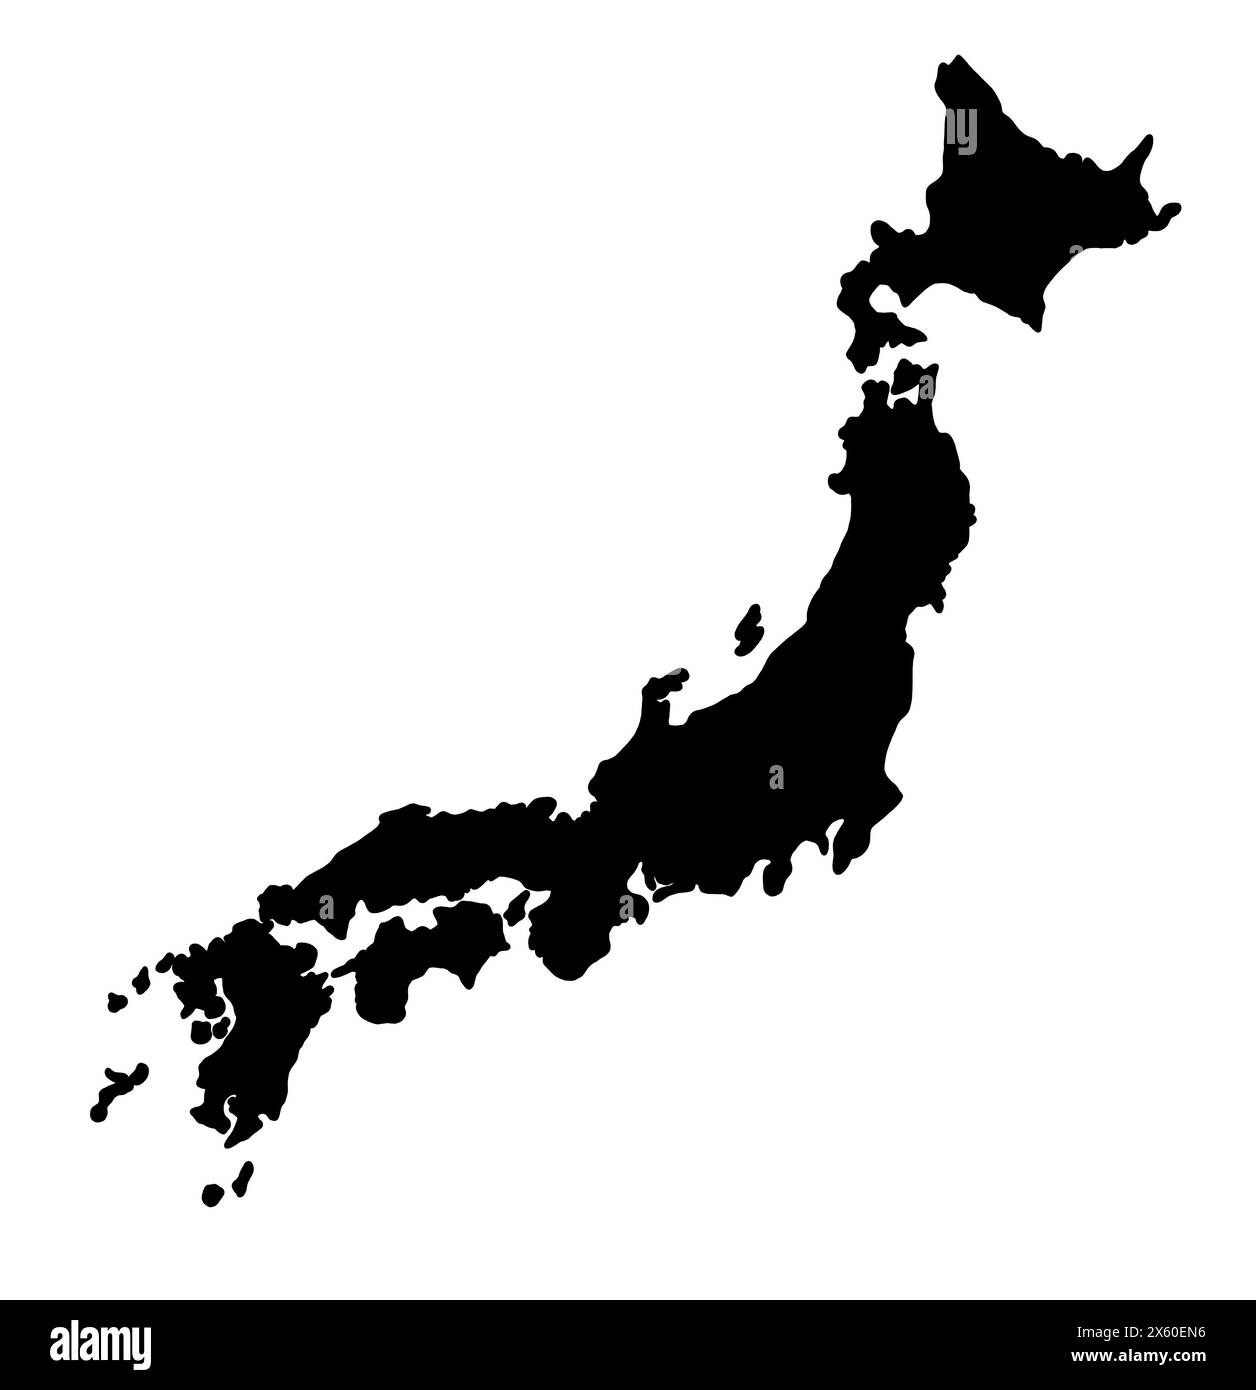 Dessin de silhouette noire du Japon. Illustration cartographique d'un pays asiatique. Banque D'Images